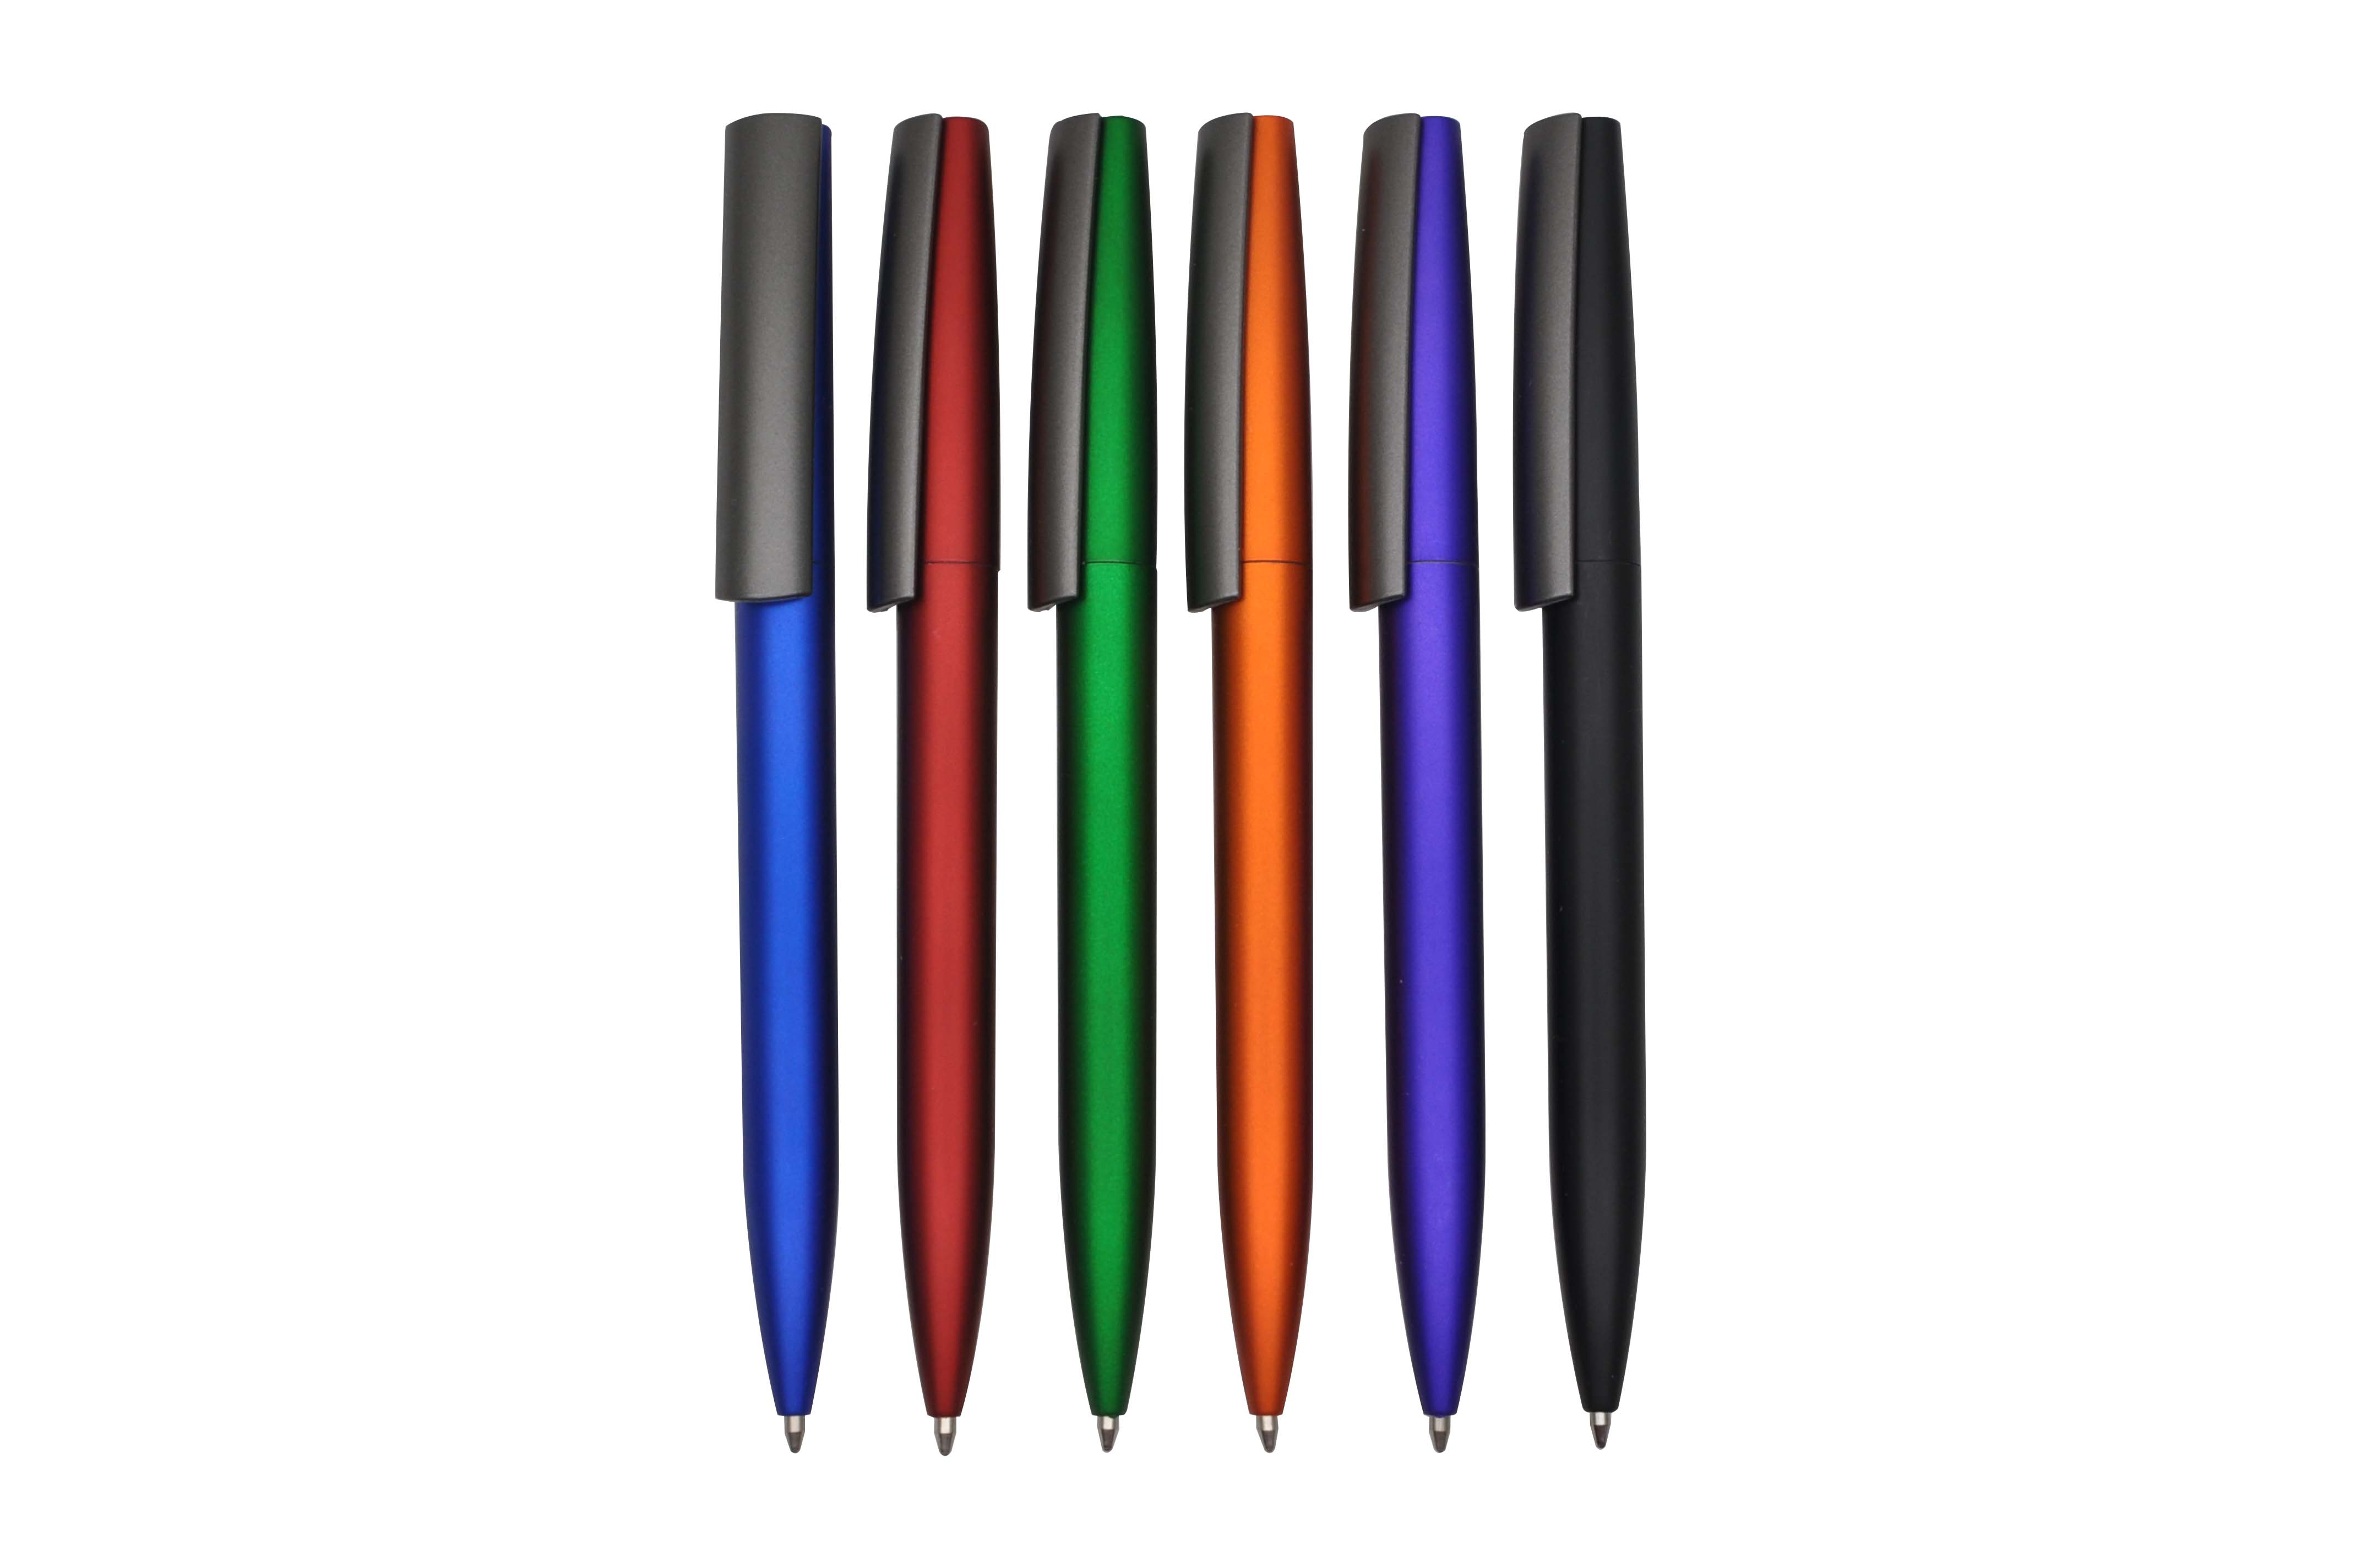 PP2405B plastic ballpoint pen 